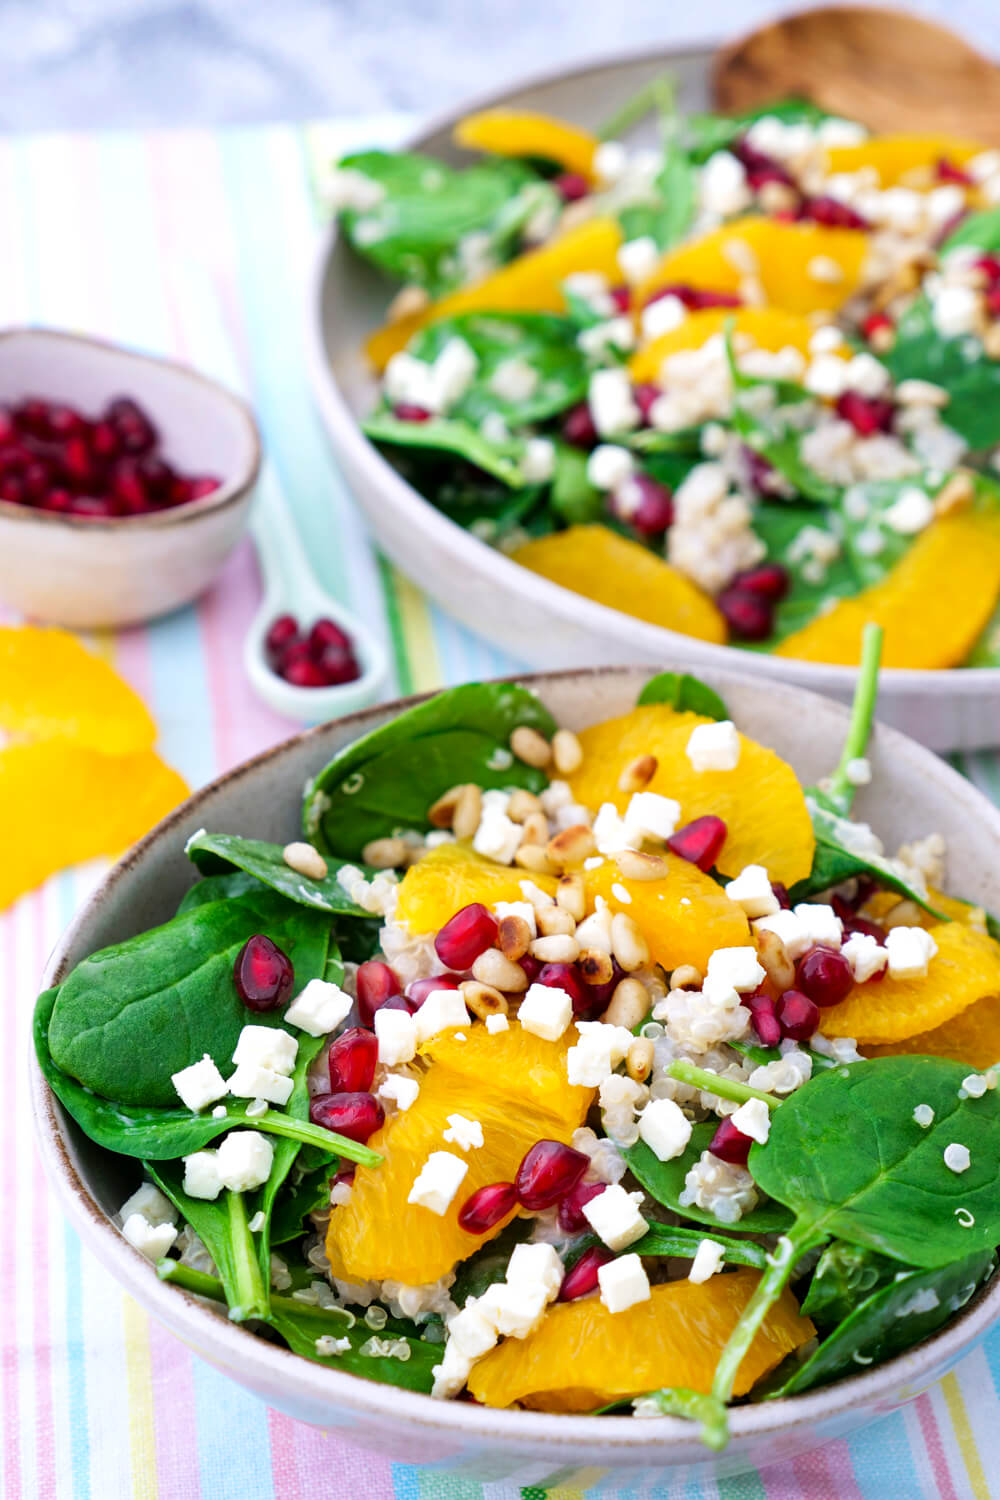 Powersalat mit Orangen, Babyspinat, Granatapfelkernen und Feta - ein super leckerer Salat für dein Immunsystem